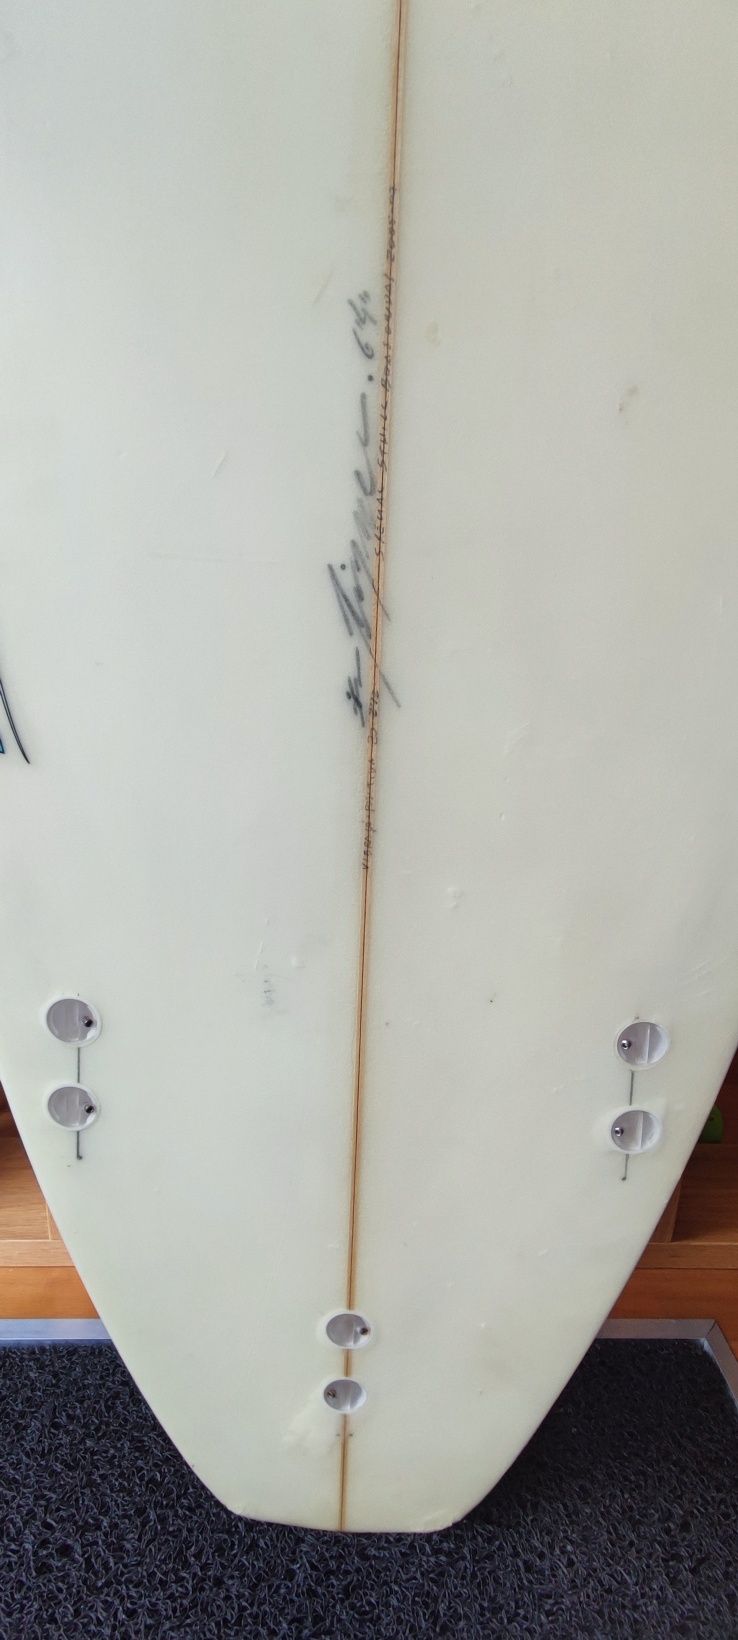 Prancha de Surf 6'4